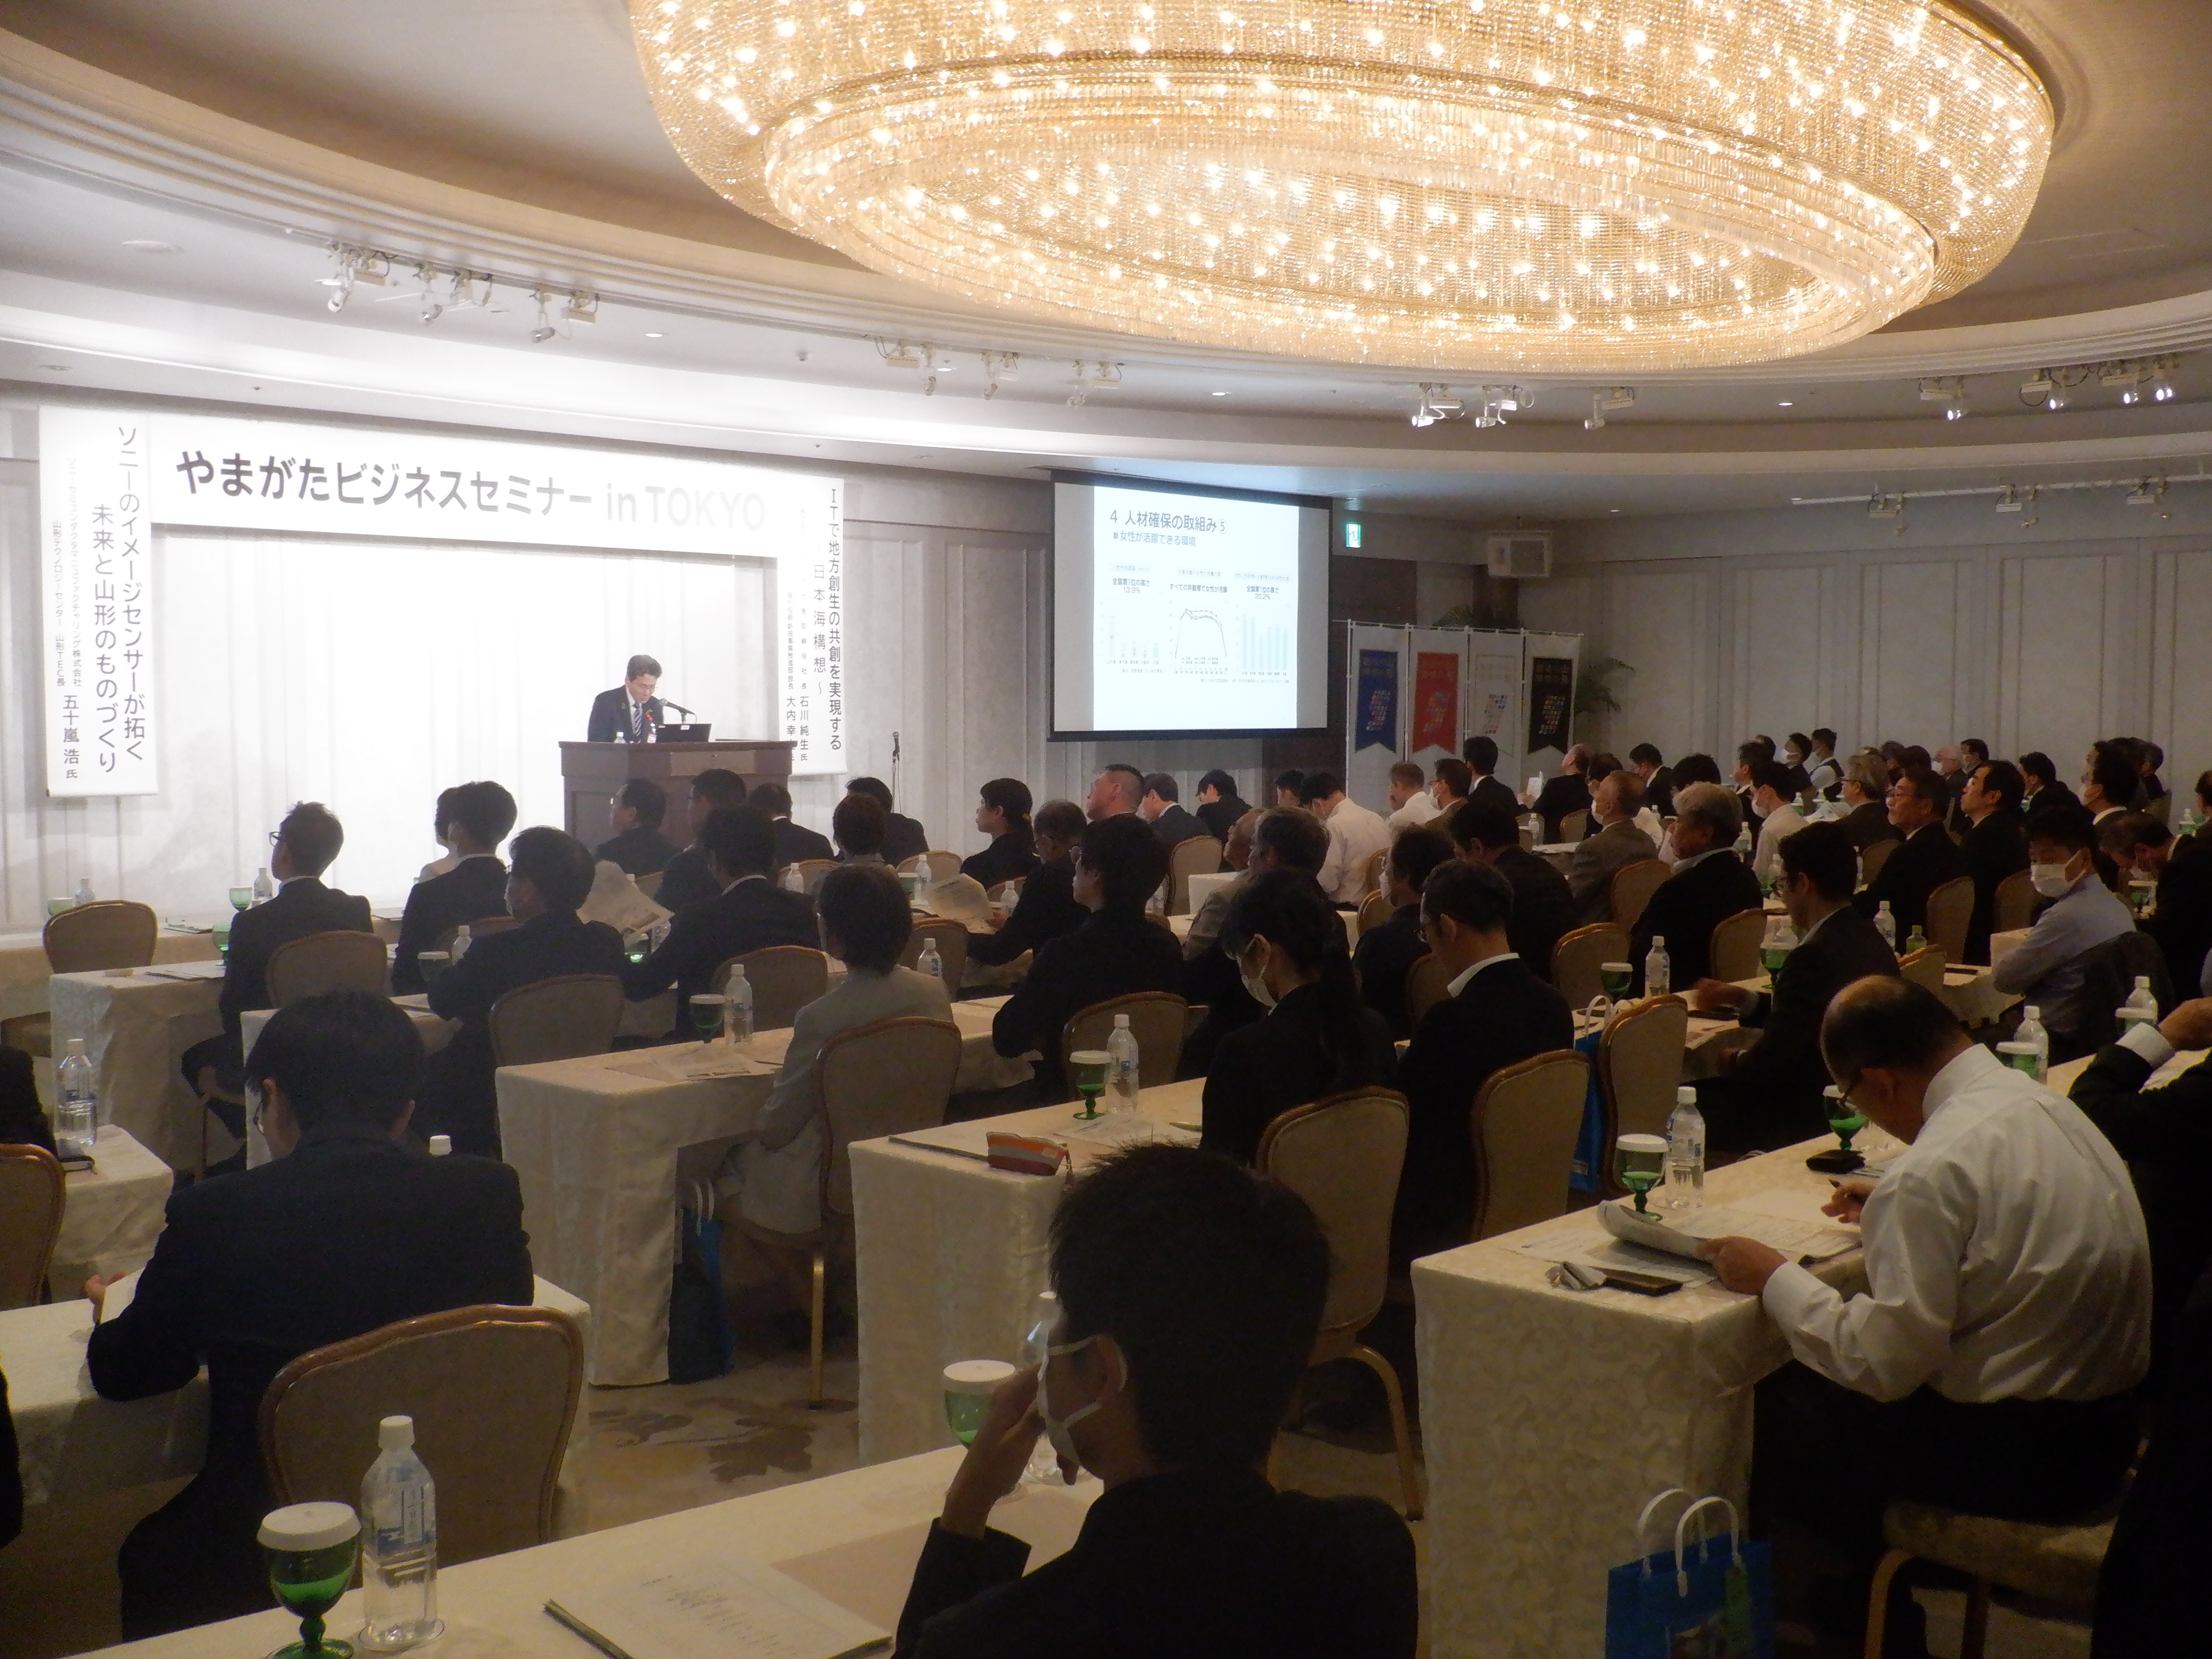 やまがた企業立地セミナー in TOKYO」に多数のご来場ありがとうございました。